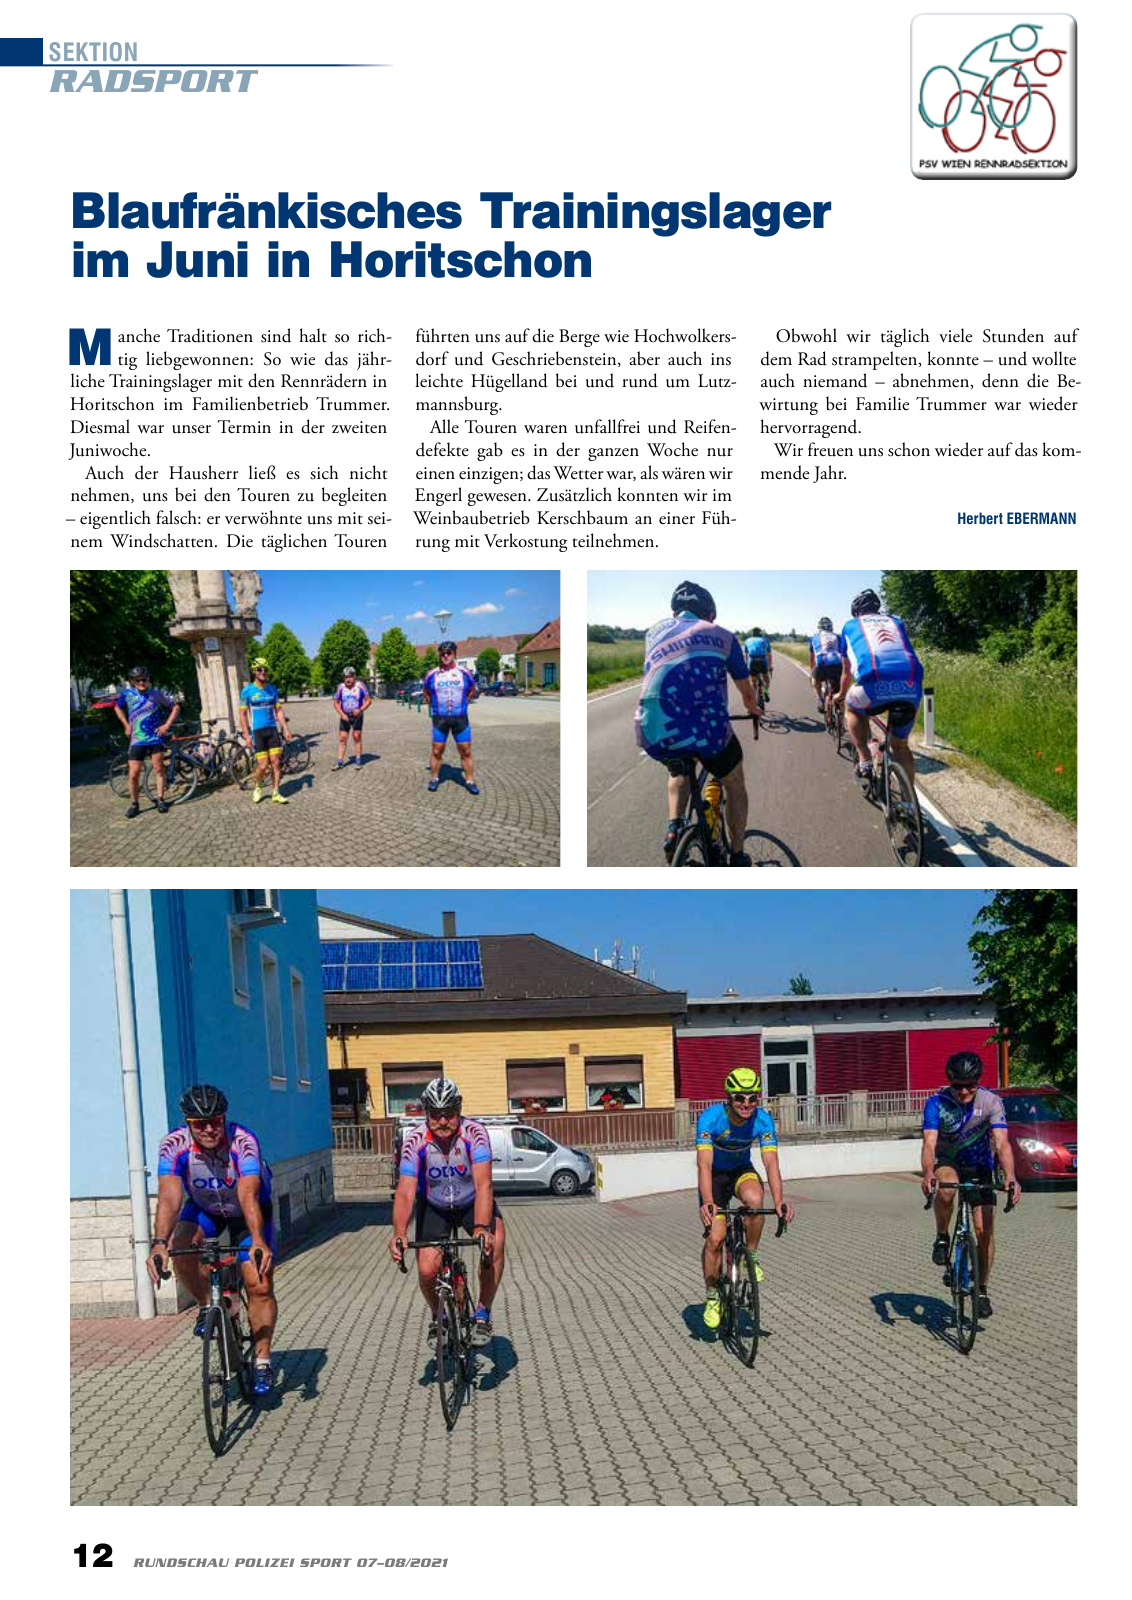 Vorschau Rundschau Polizei Sport 07-08/2021 Seite 12